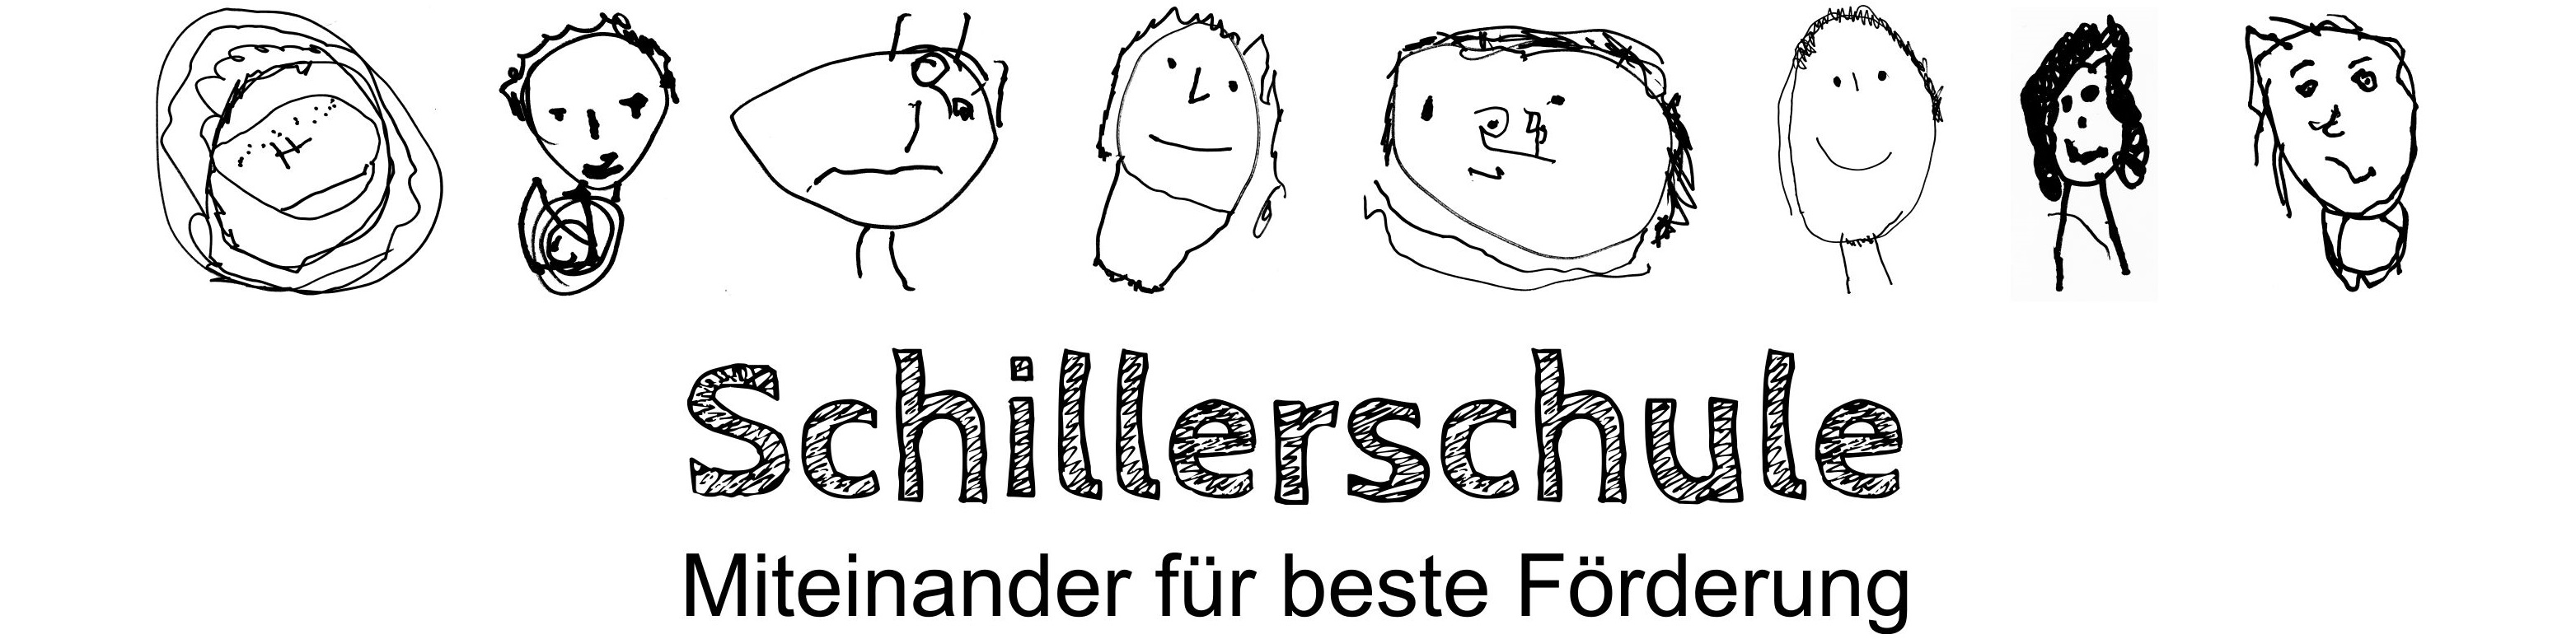 Schillerschule Oberhausen